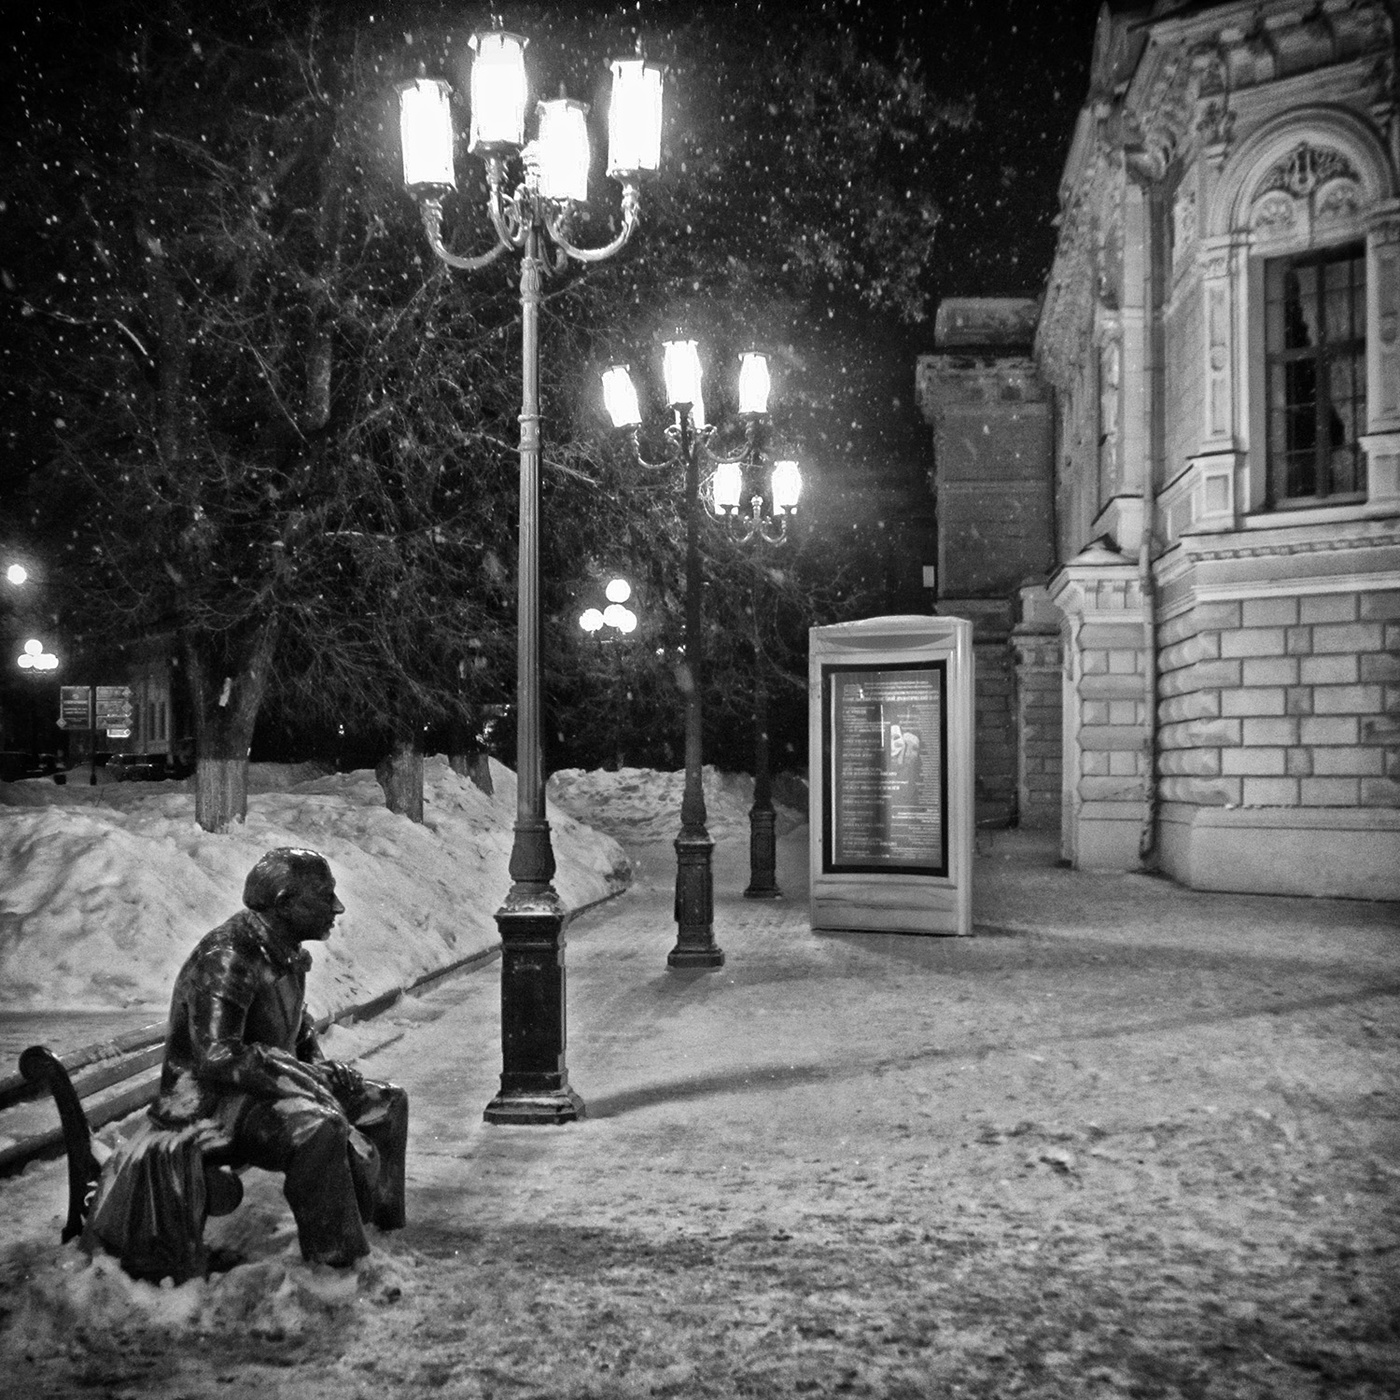 памятник евстигнееву в нижнем новгороде фото